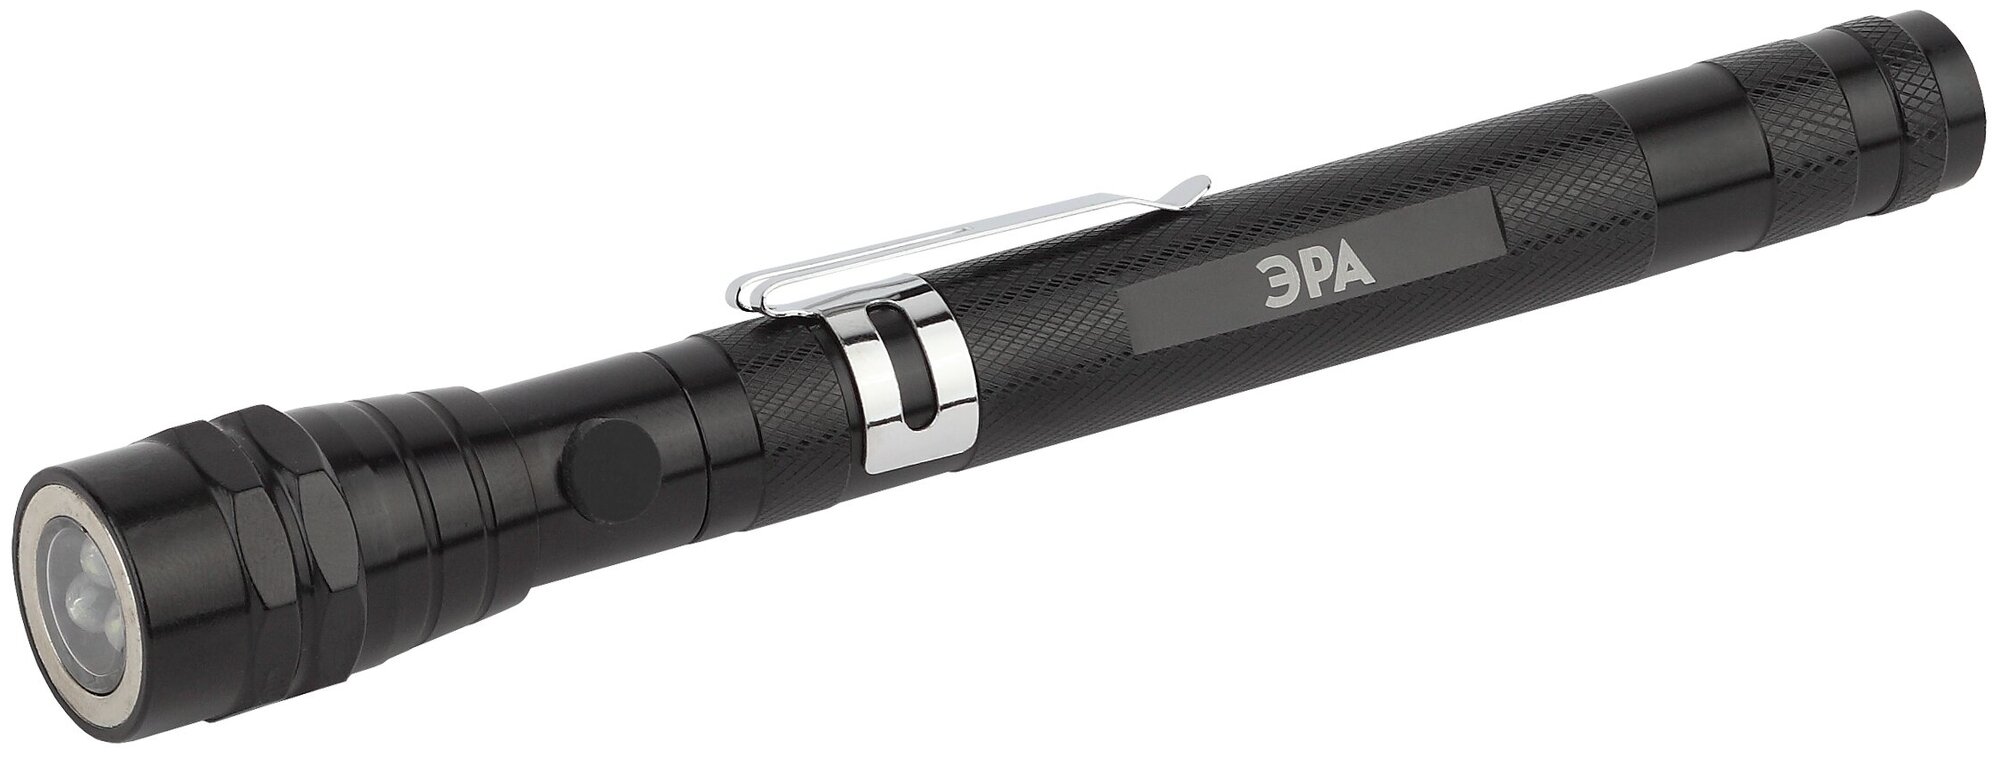 Светодиодный фонарь ЭРА Рабочие, серия "Практик" RB-602 ручной на батарейках магнит с гибкой телескопической ручкой арт. Б0033748 (1 шт.)